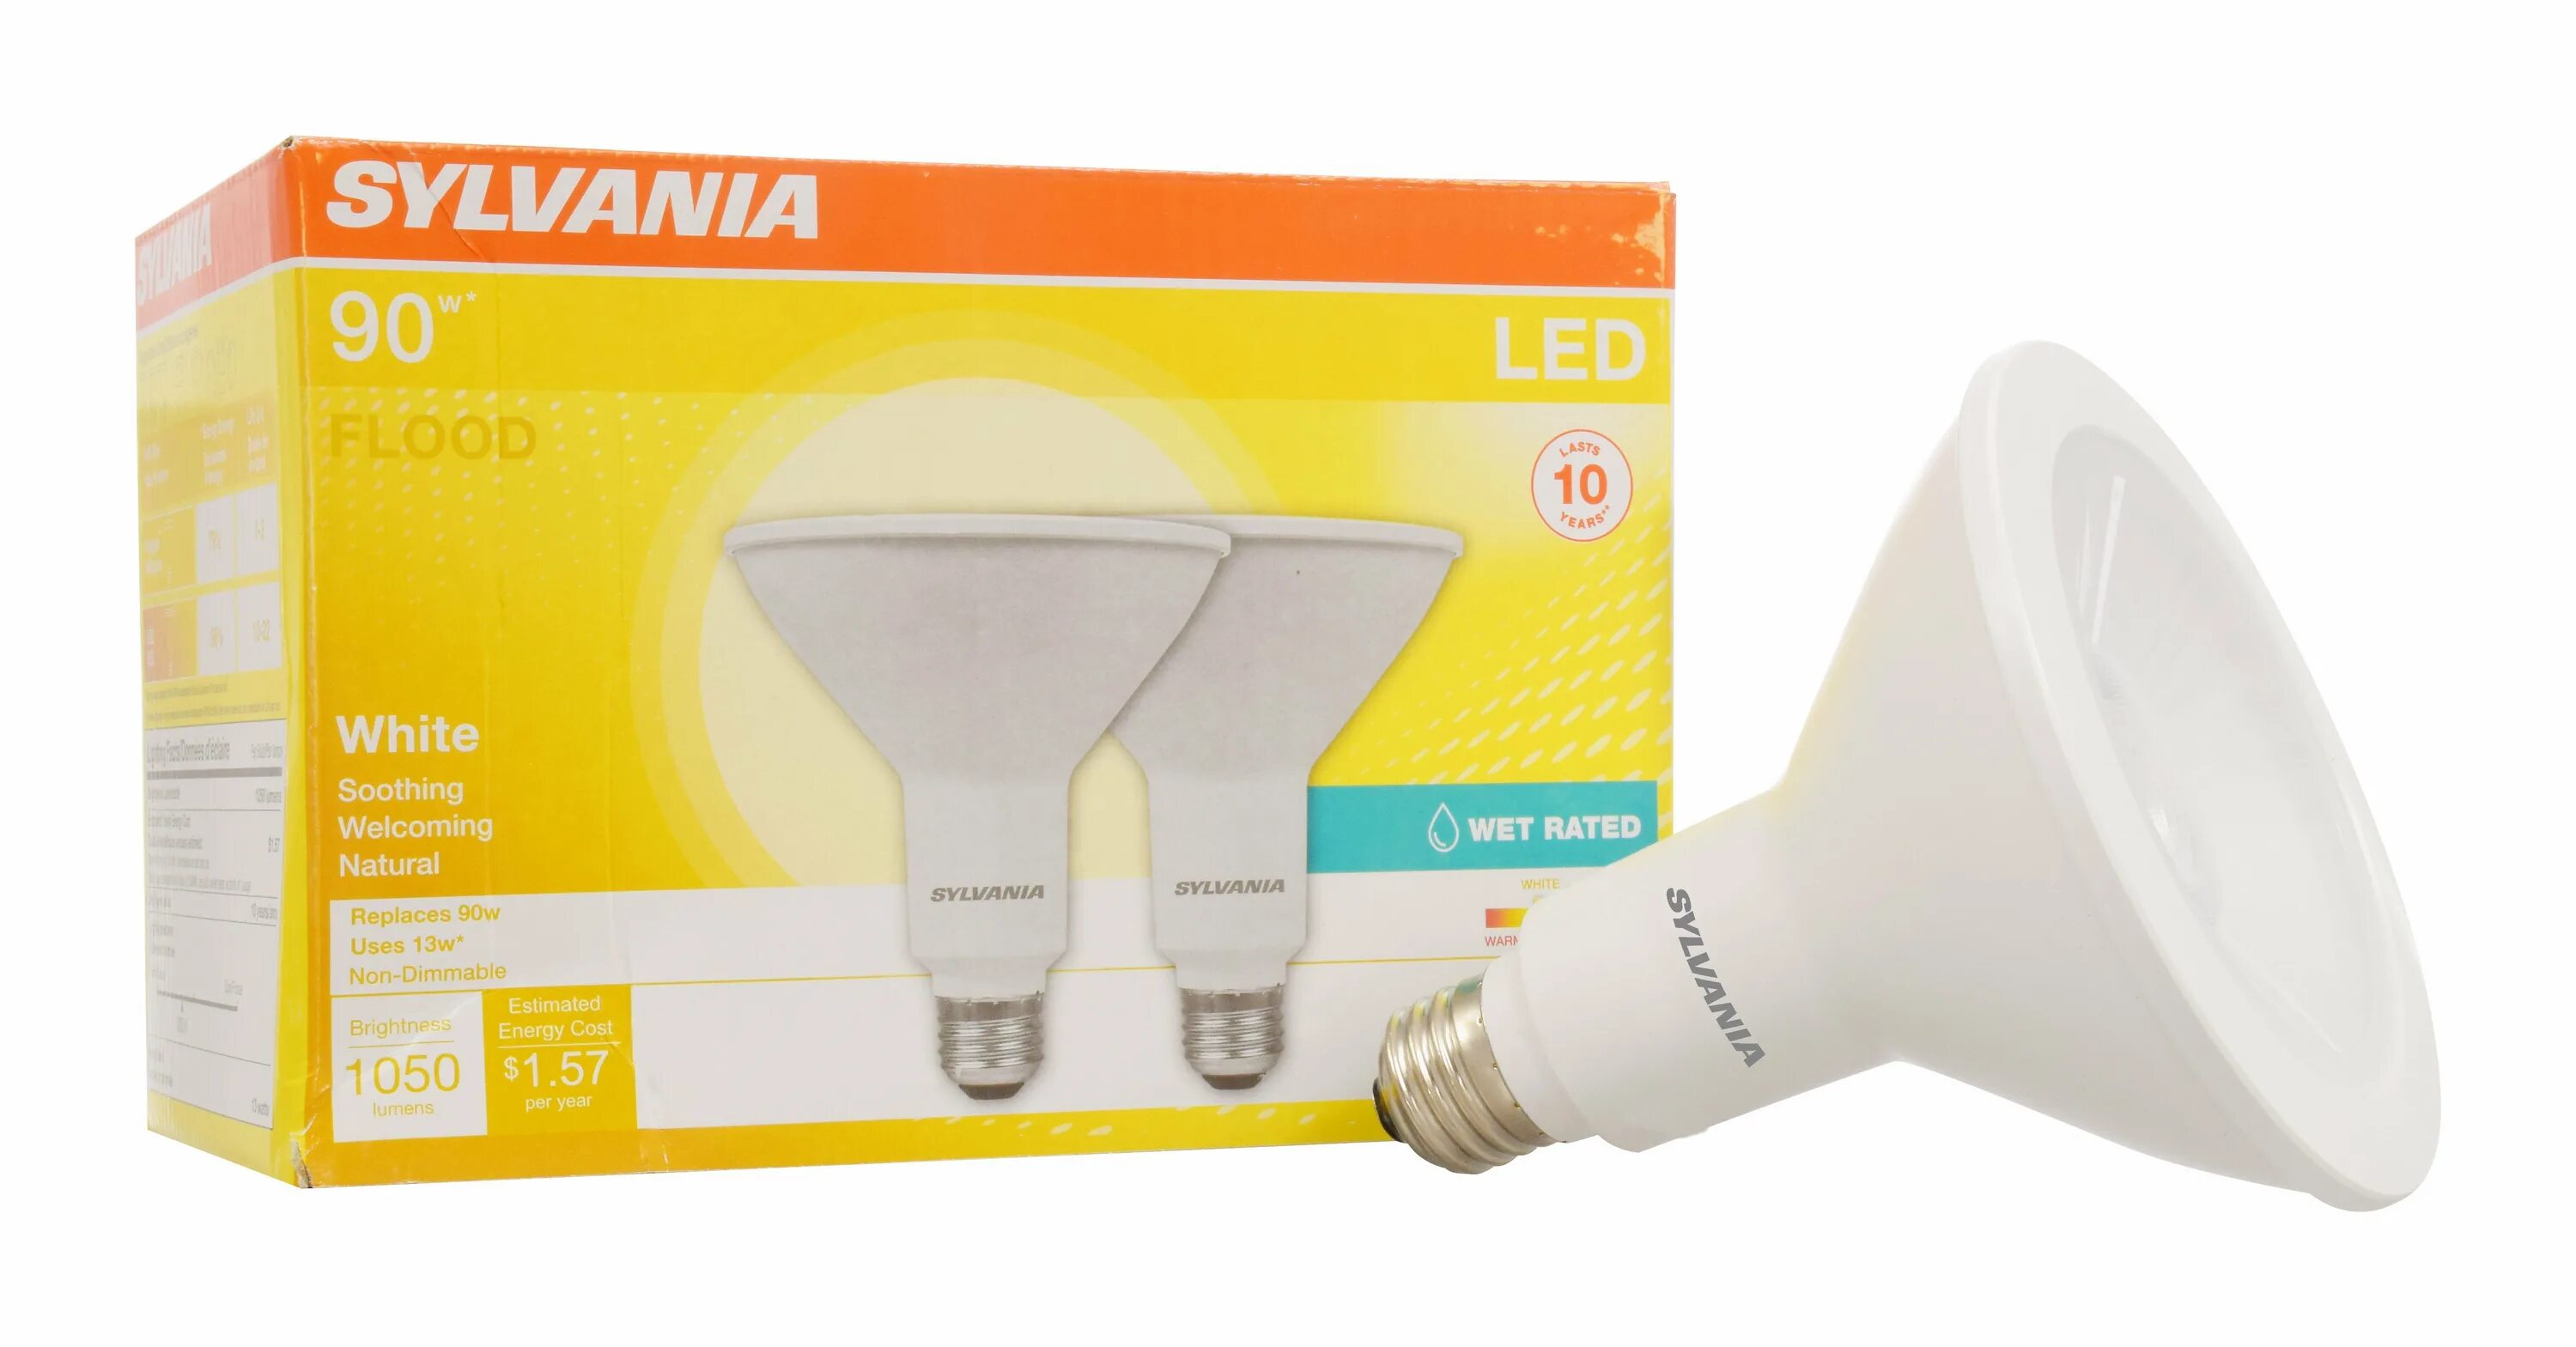 Лампа отзывы какую. Лампа диммируемая Sylvania e14. 9290013422 Лампа Dimmable. Светодиодная лампа "Philips" 13w led 3000k. Диммируемая лампа гриб.